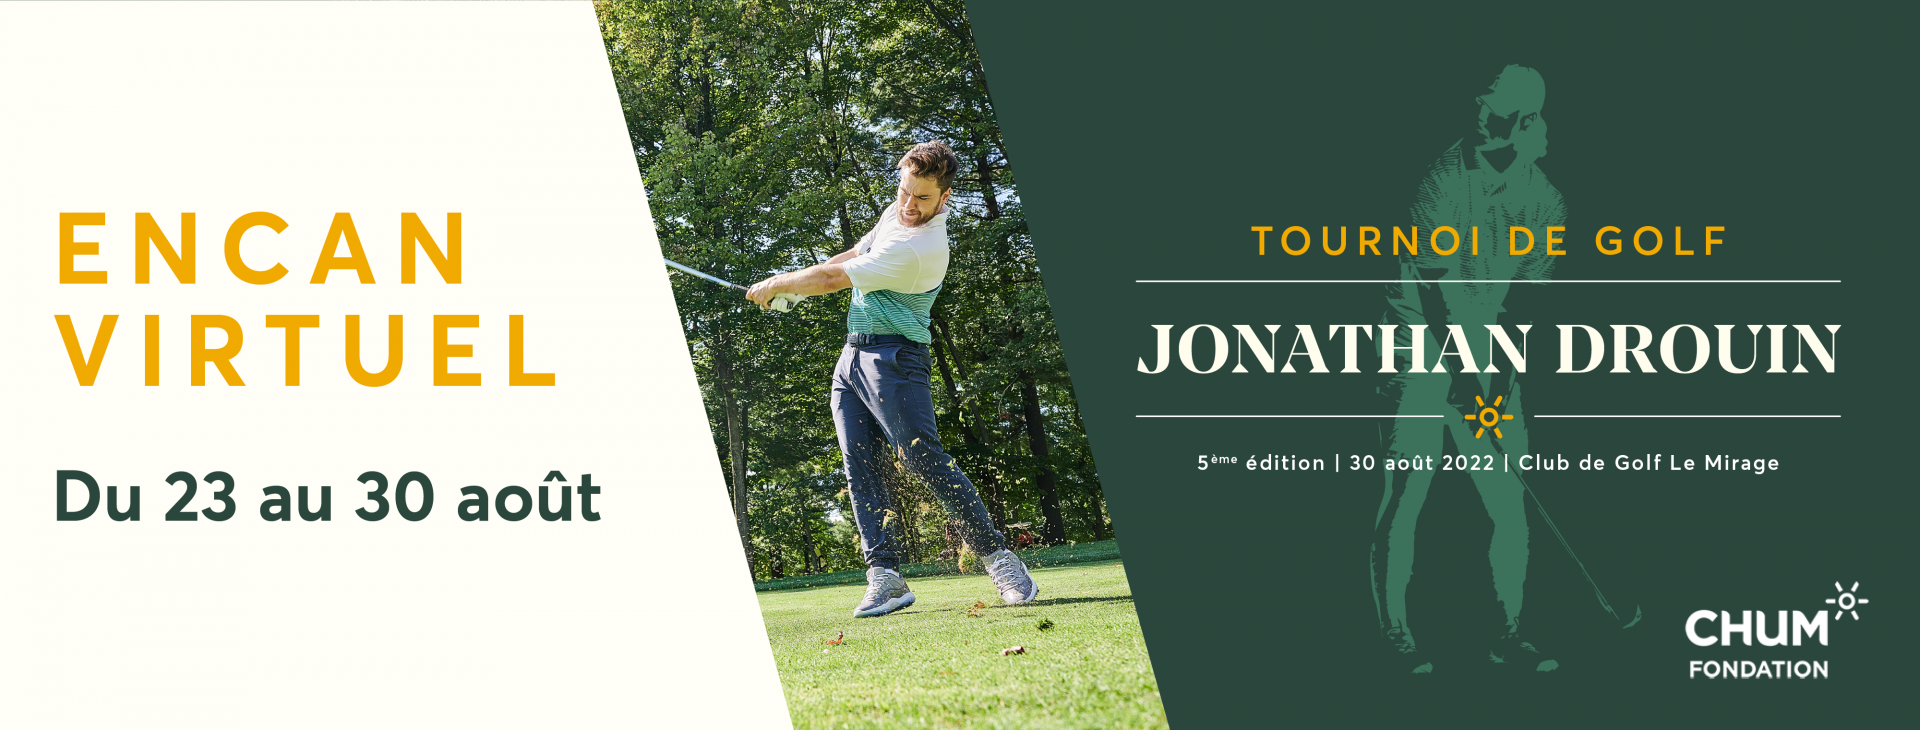 Encan silencieux Tournoi de golf Jonathan Drouin